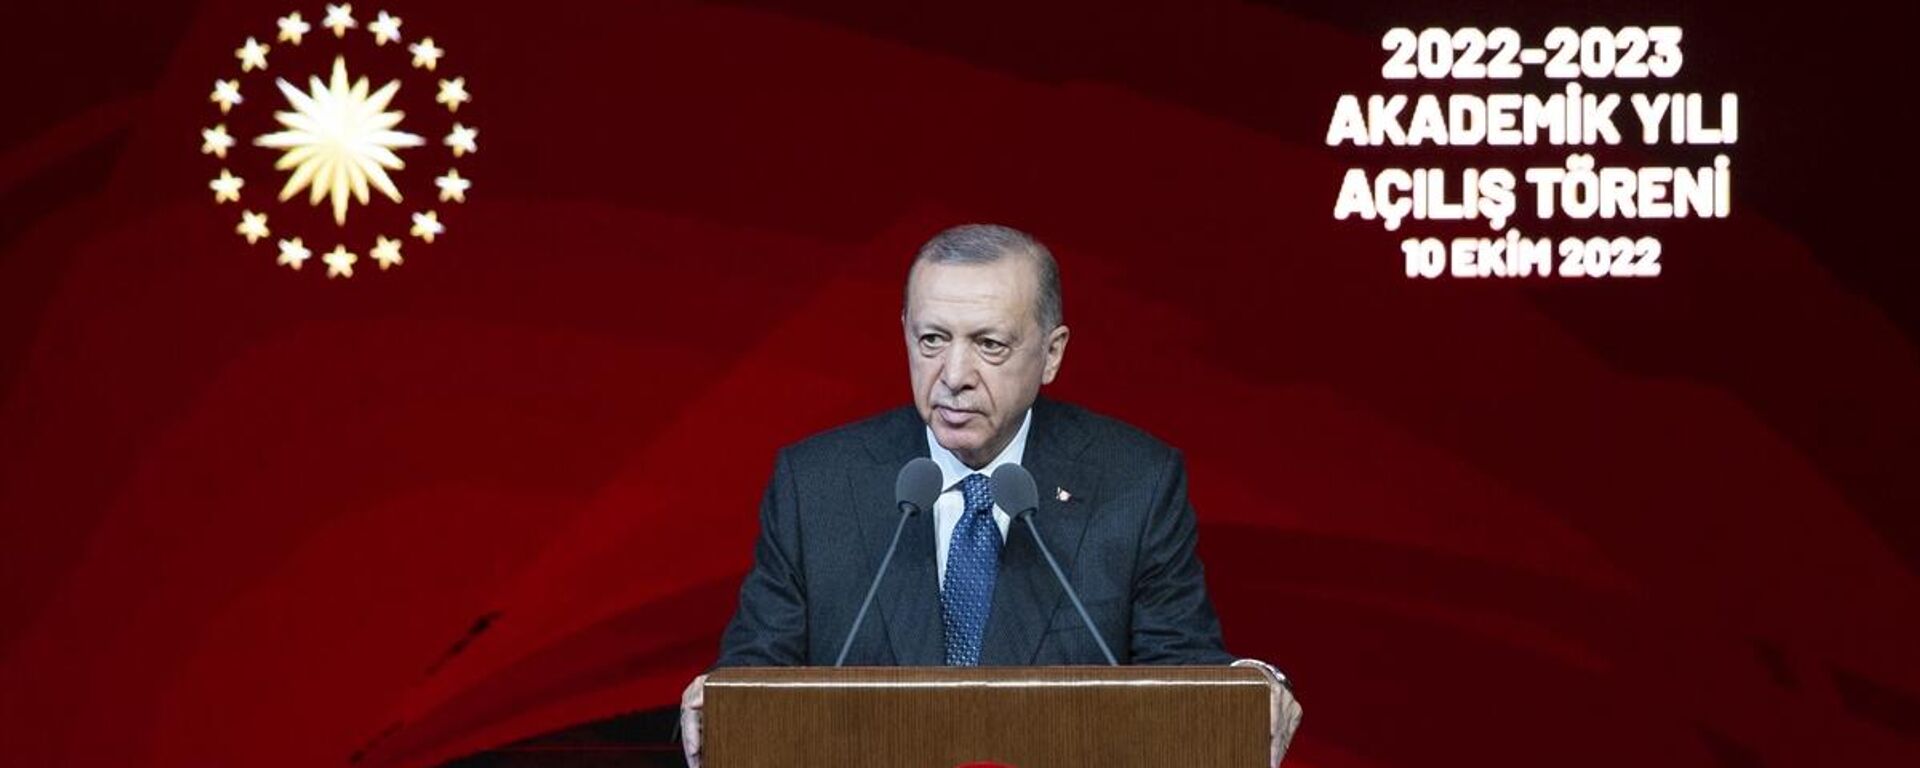 Cumhurbaşkanı Erdoğan, 2022-2023 Akademik Yılı Açılış Töreni'nde konuştu. - Sputnik Türkiye, 1920, 10.10.2022